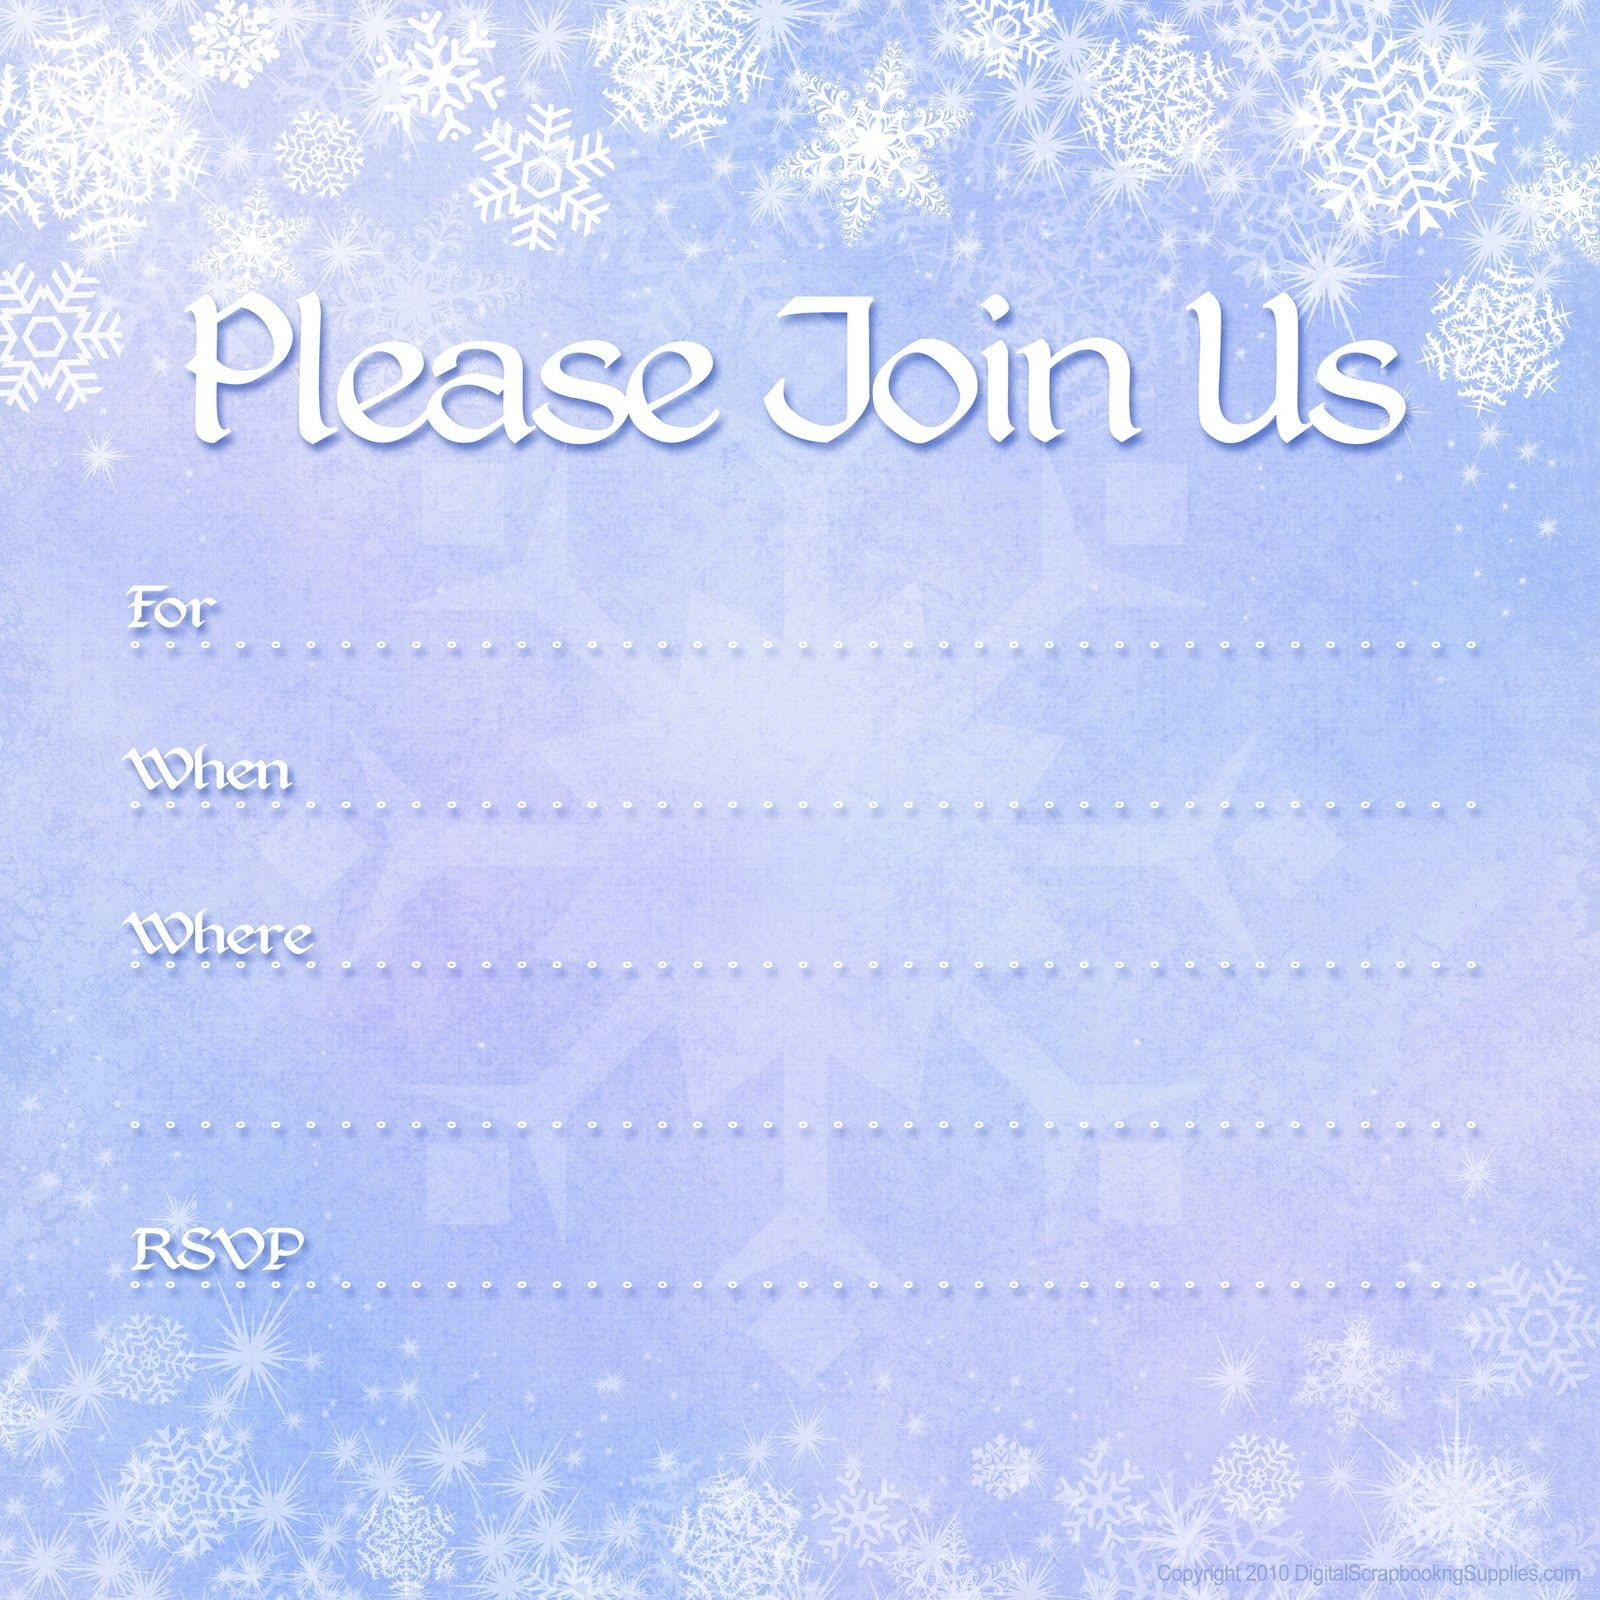 Free Printable Invites | Free Printable Party Invitations: Free - Holiday Invitations Free Printable